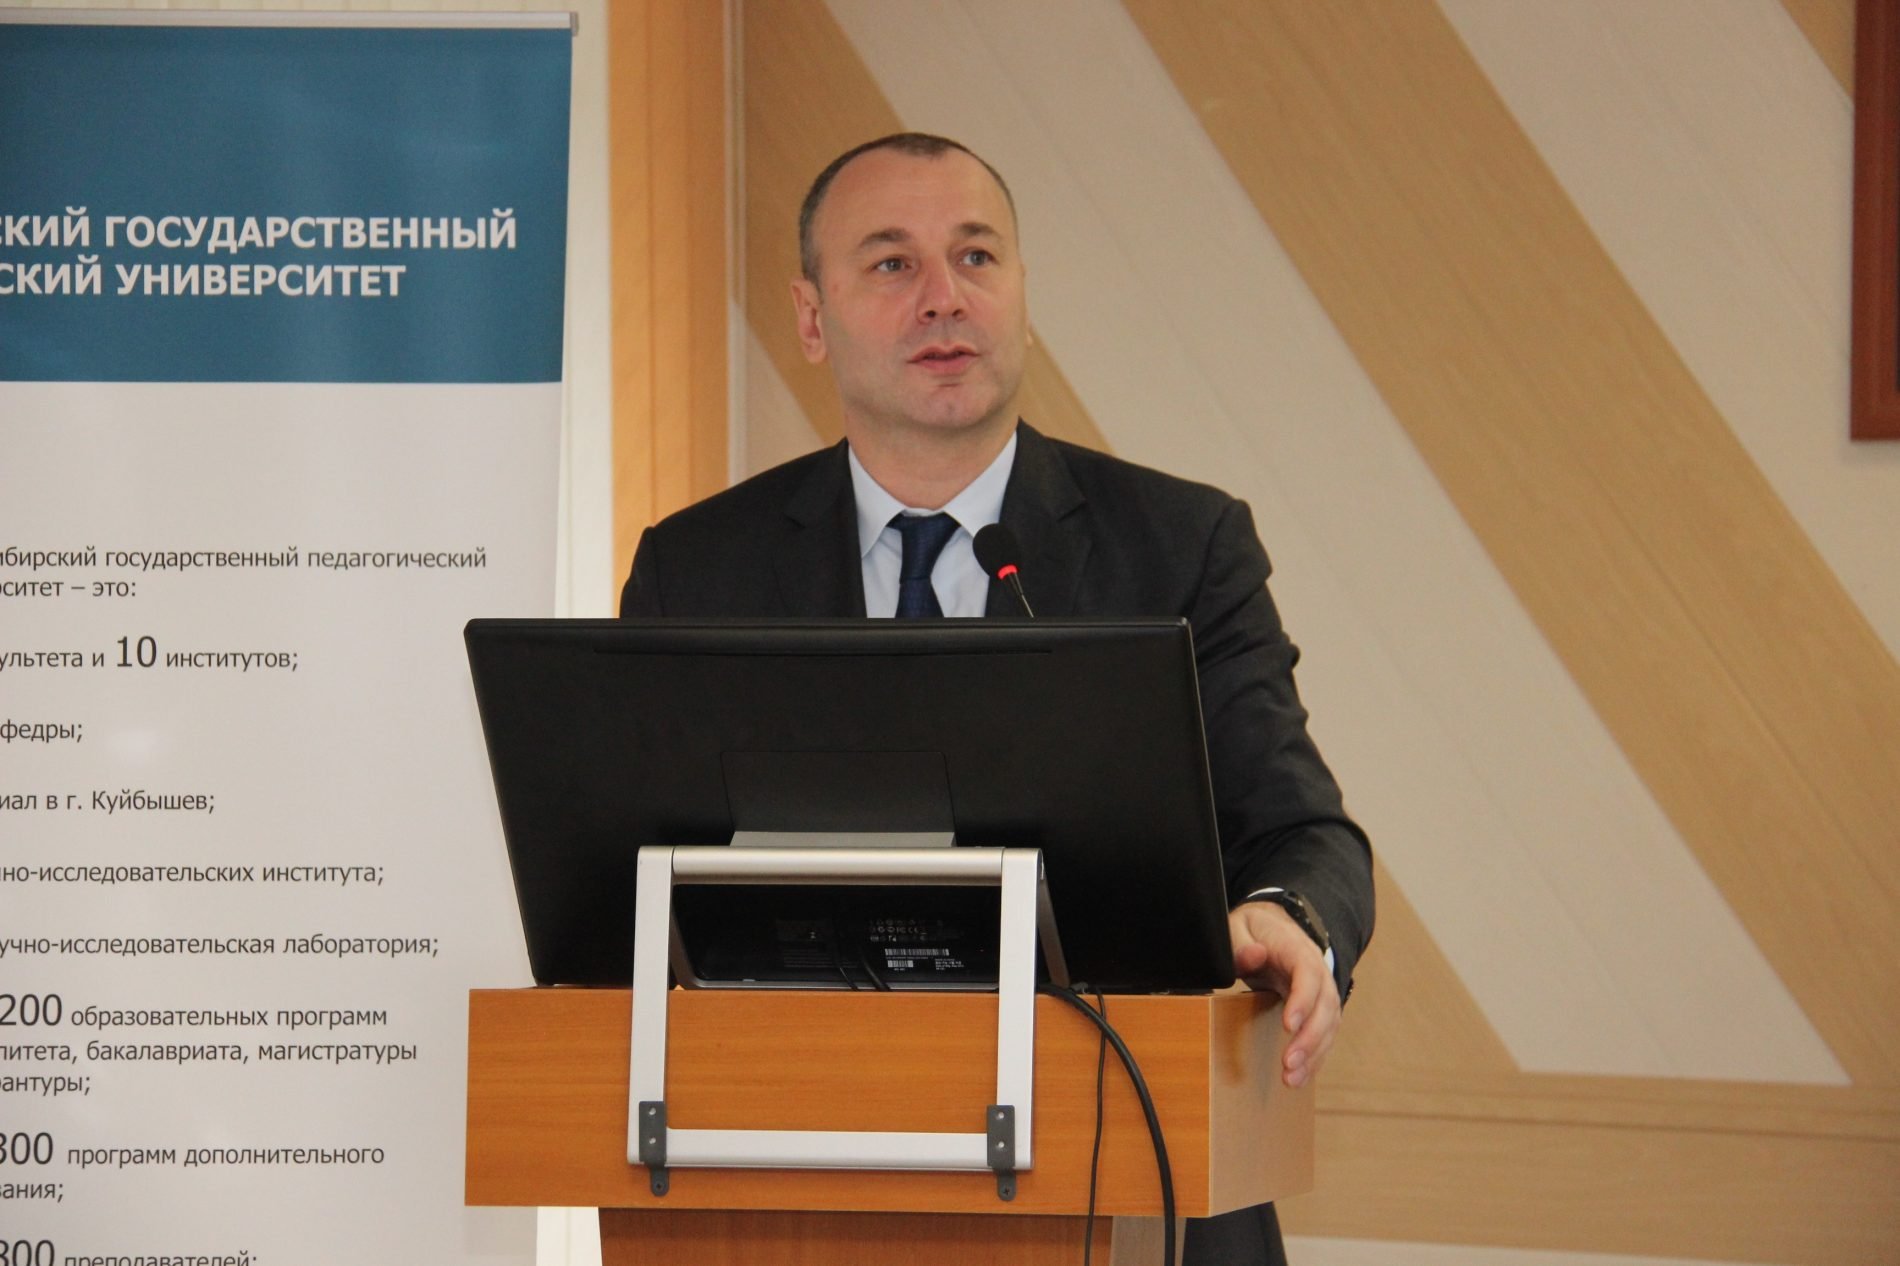 Рособрнадзор обсудил с регионами эффективность систем общественного наблюдения на ЕГЭ